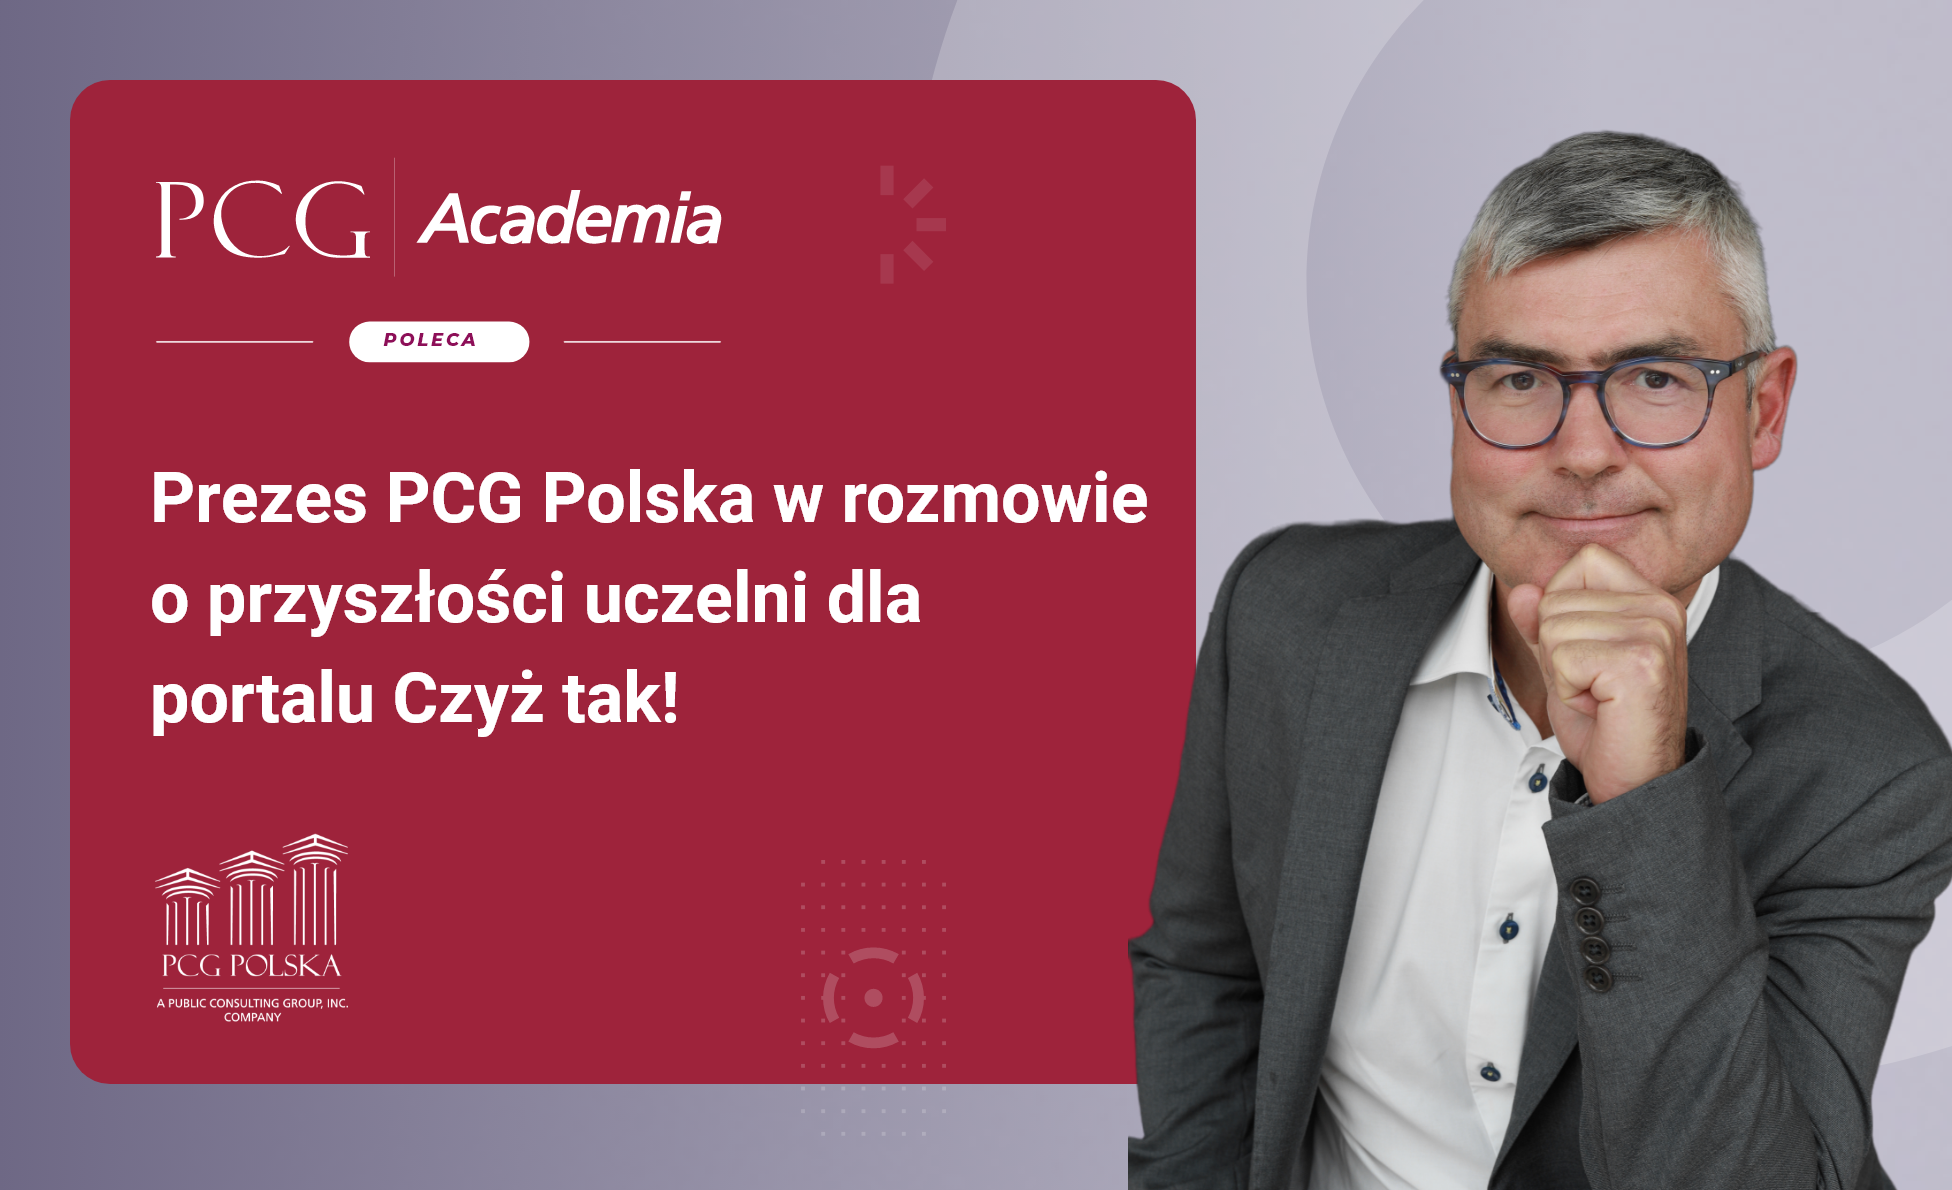 Prezes PCG Polska w rozmowie o przyszłości uczelni dla portalu Czyż tak!